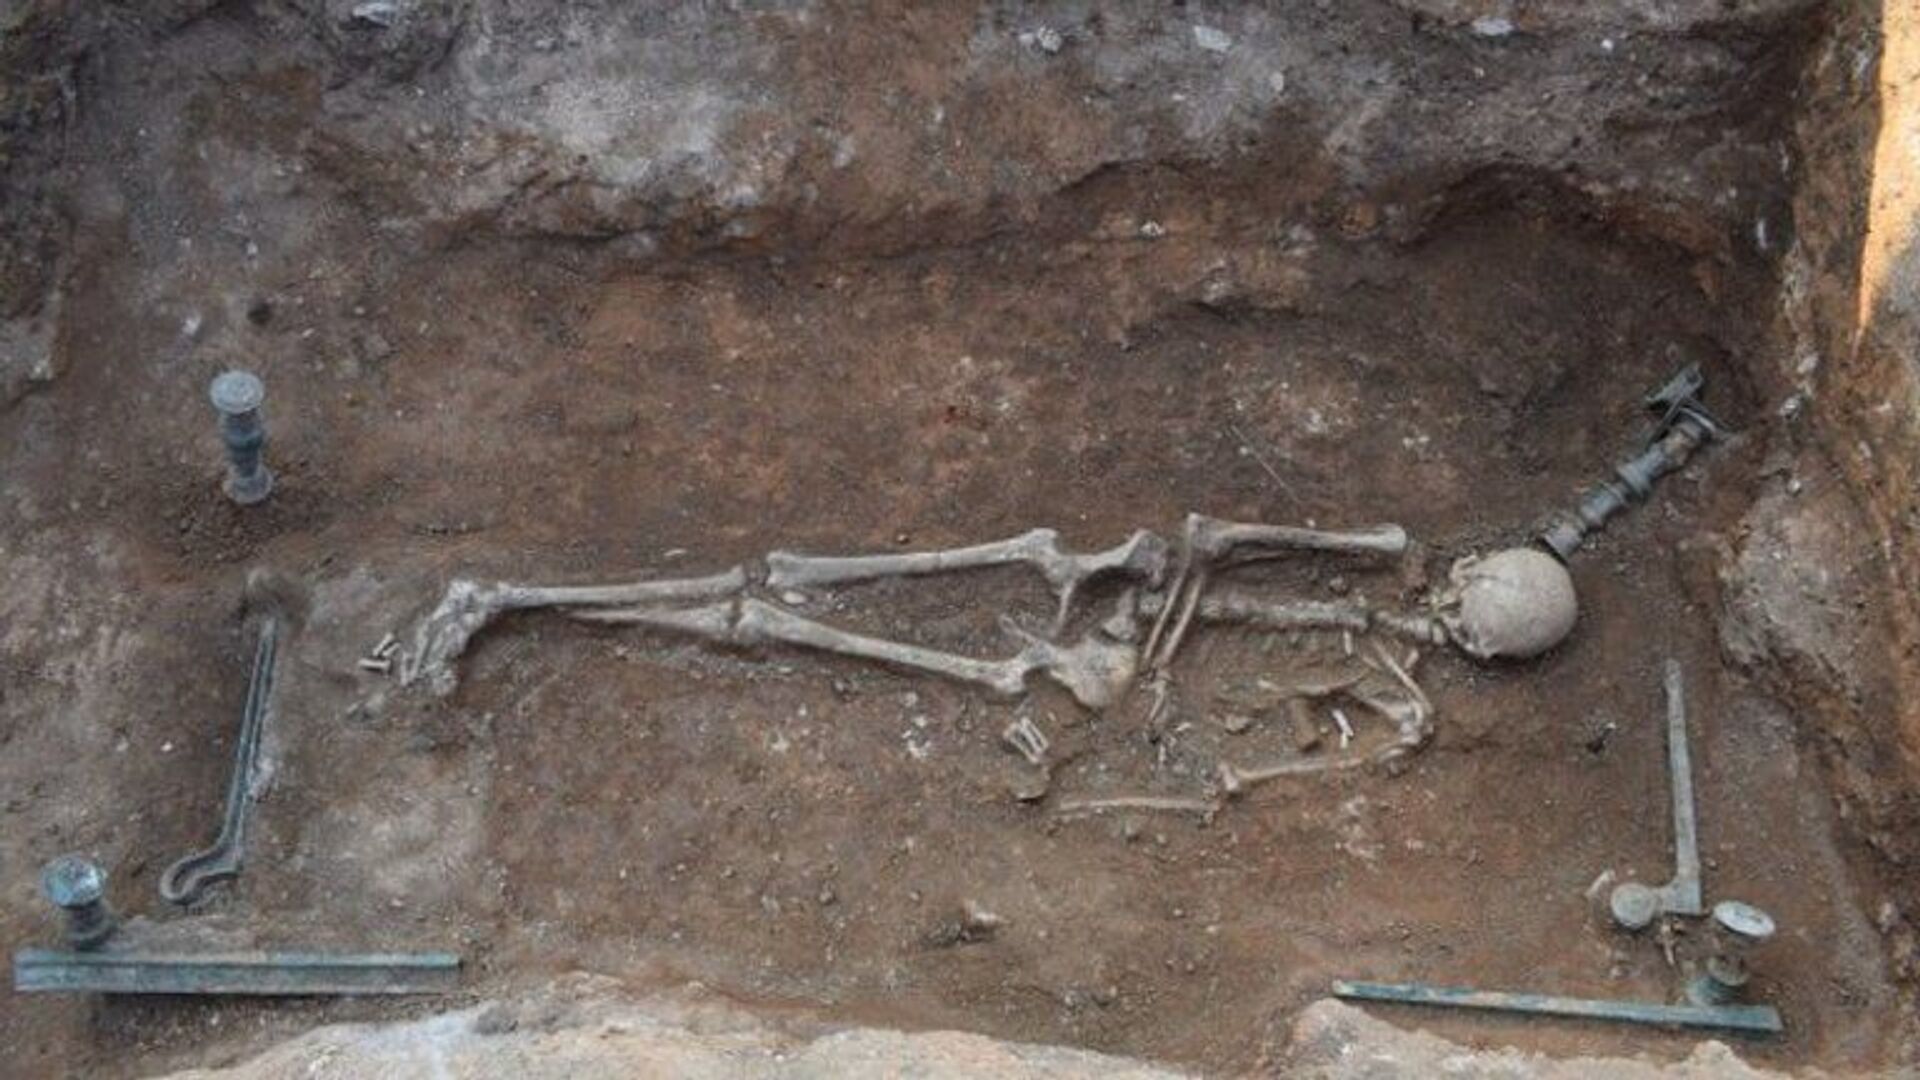 'Único': arqueólogos encontram restos mortais de mulher de 2 mil anos em cama de madeira (FOTO) - Sputnik Brasil, 1920, 29.04.2021